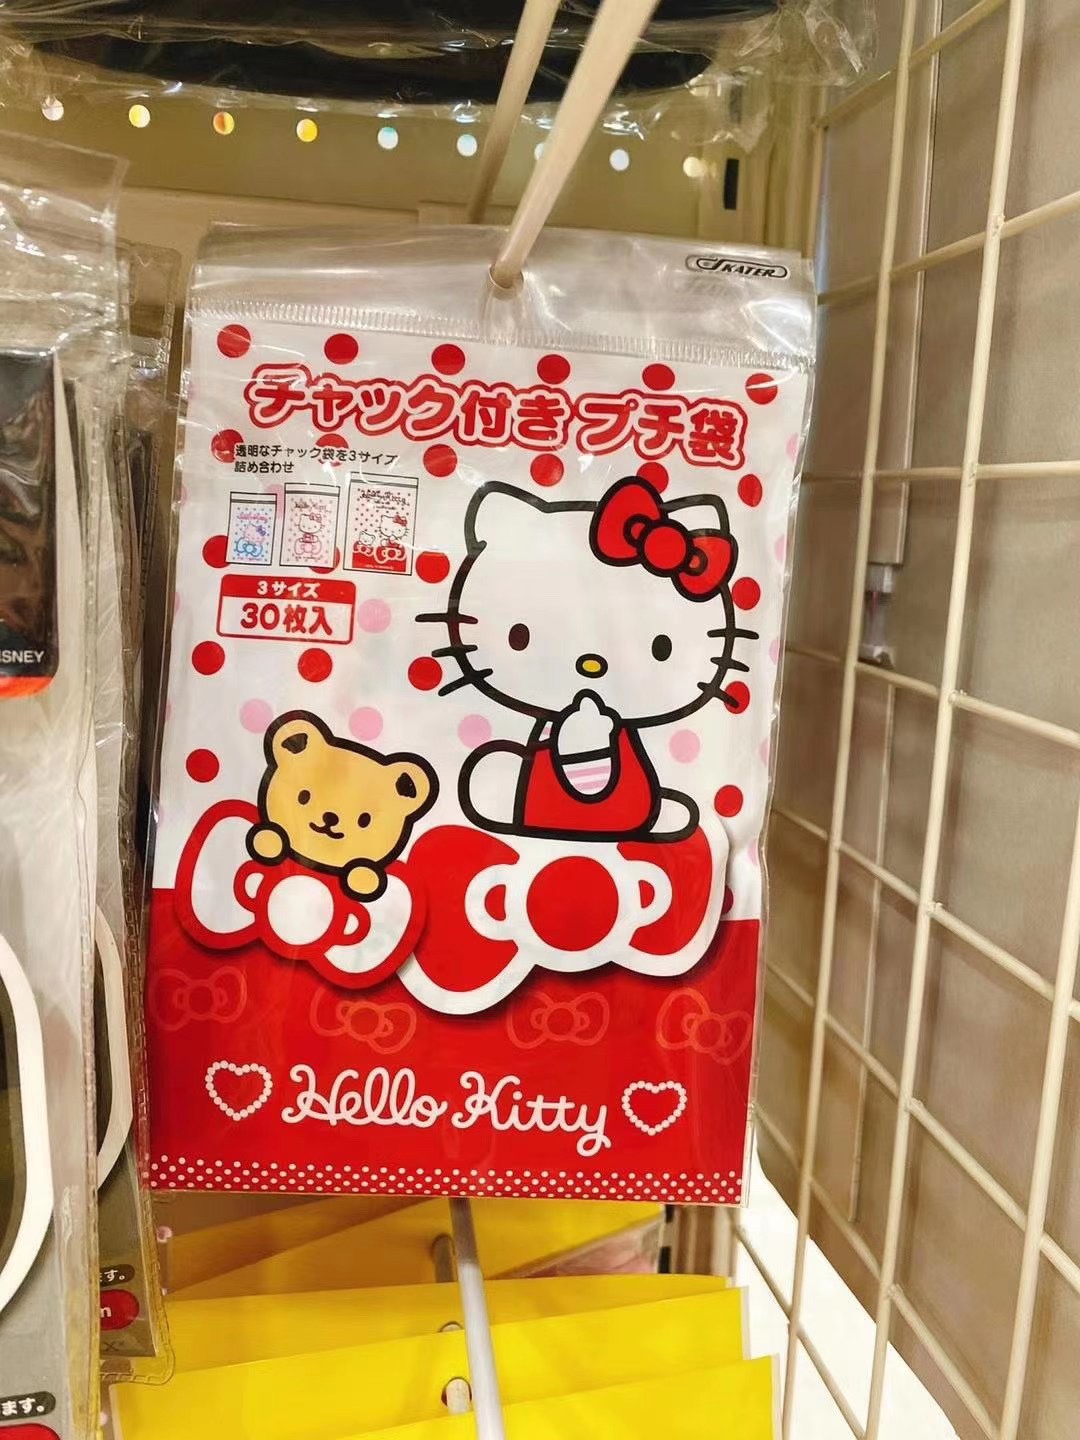 日本采购 斯凯达幼儿园零食袋 自封袋糖果食品包装袋 30枚入